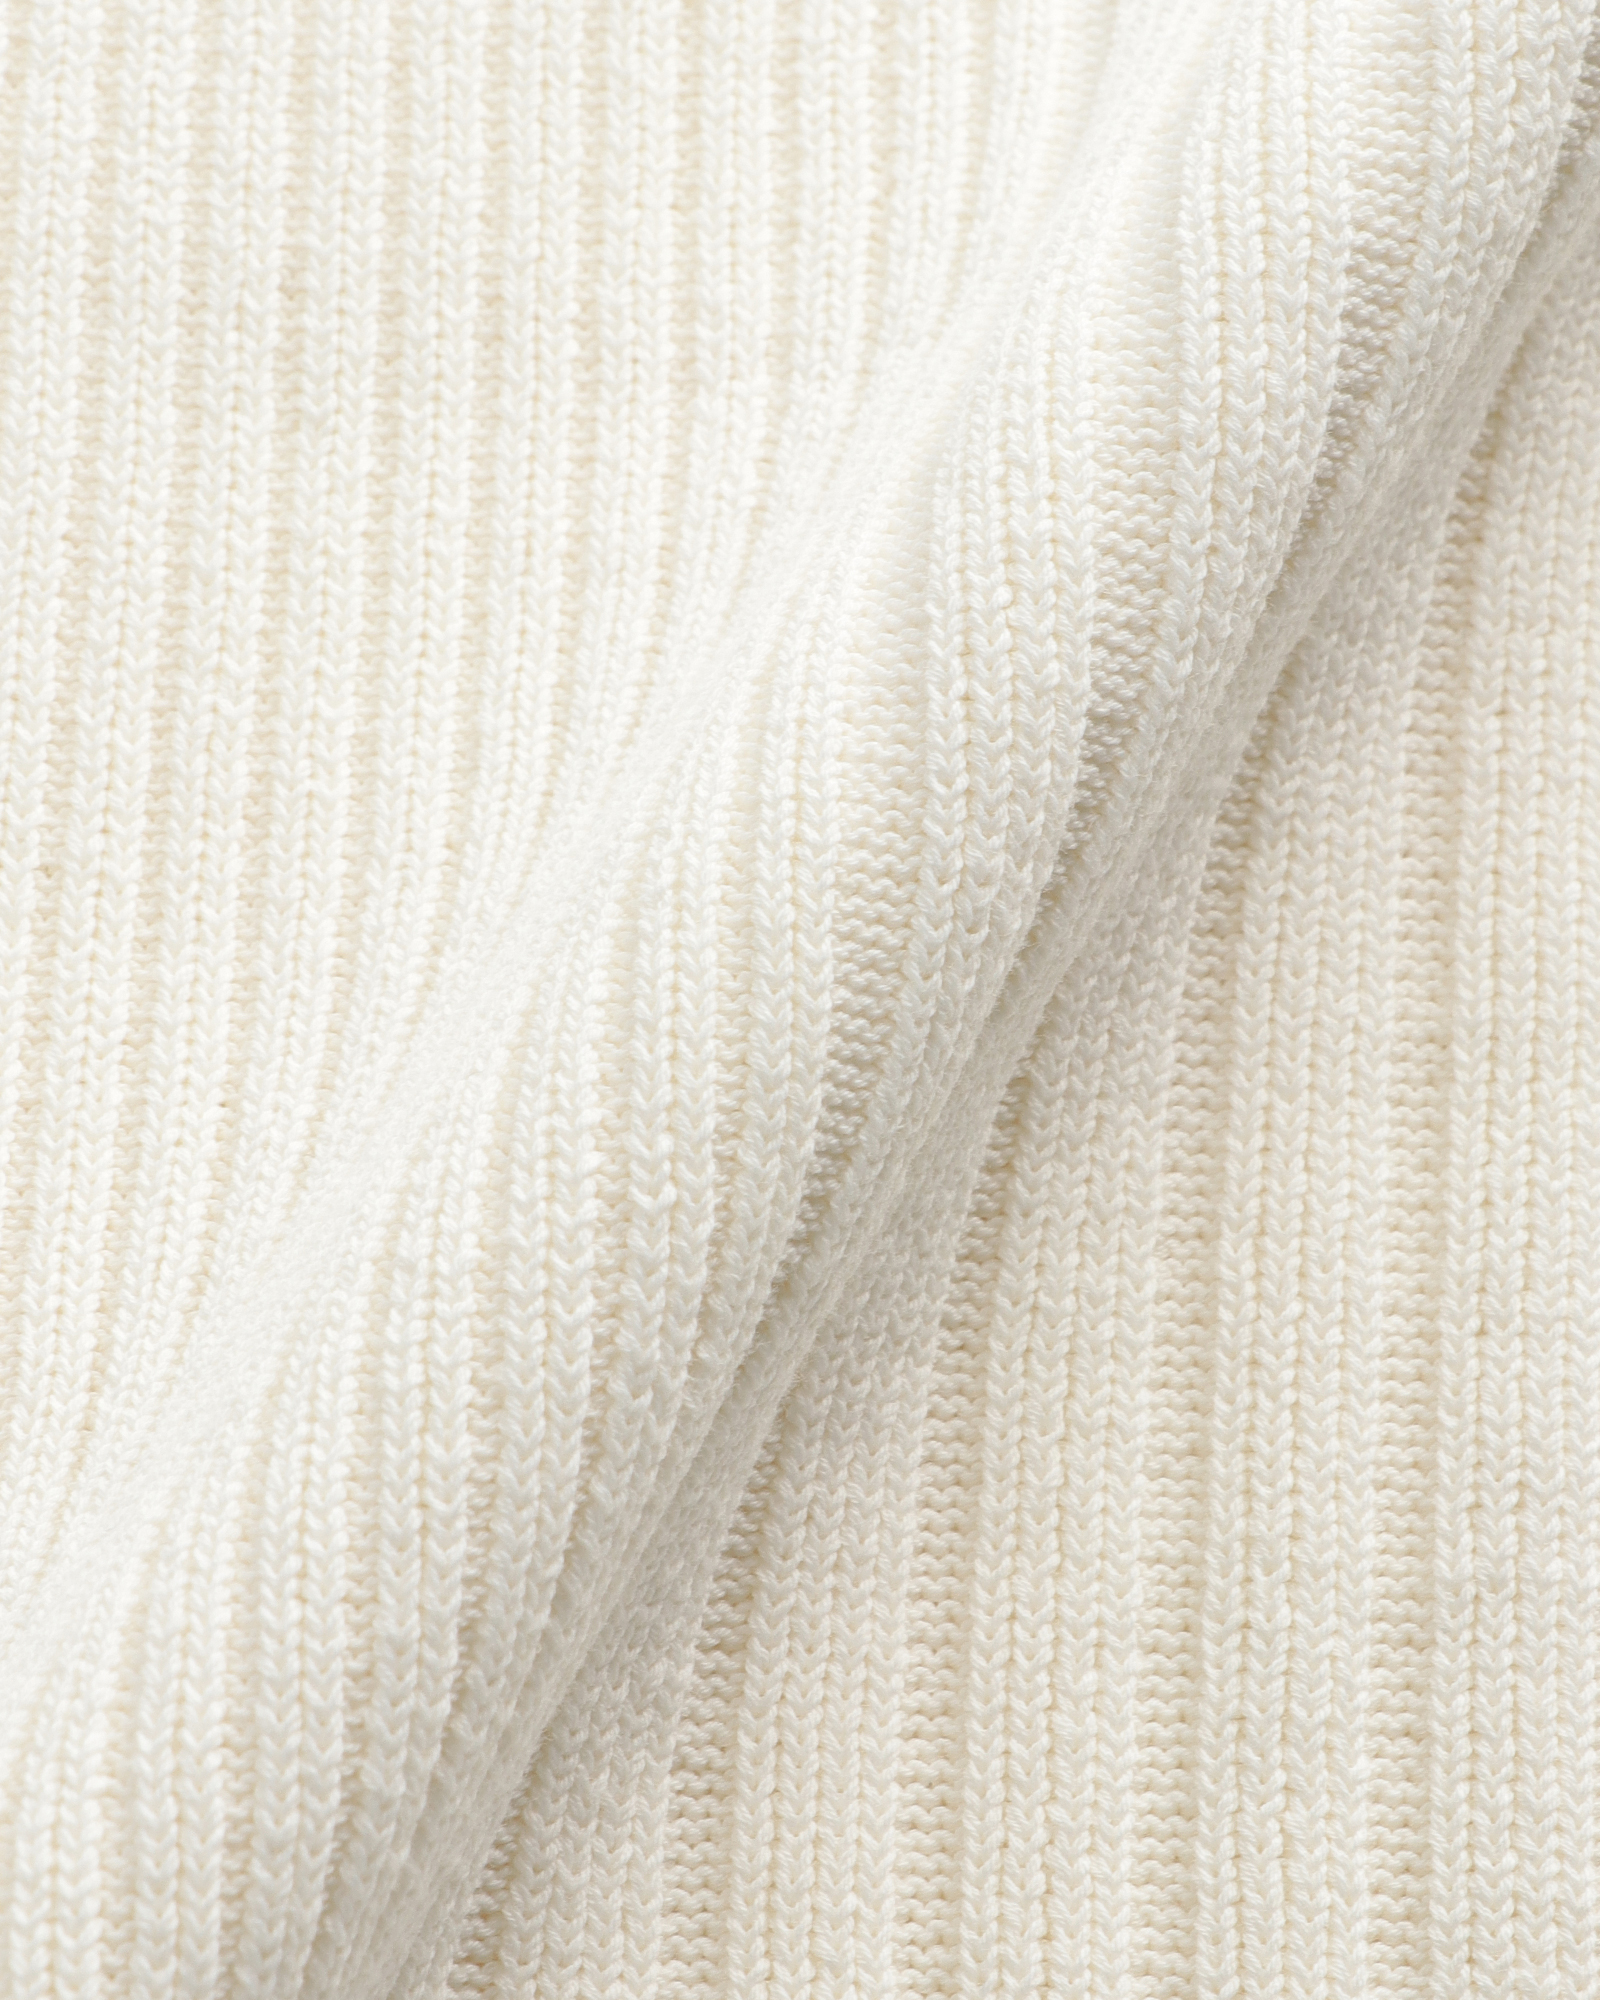 あり生地の厚さTheory Dry Cotton 2 Mix Stitch Shell